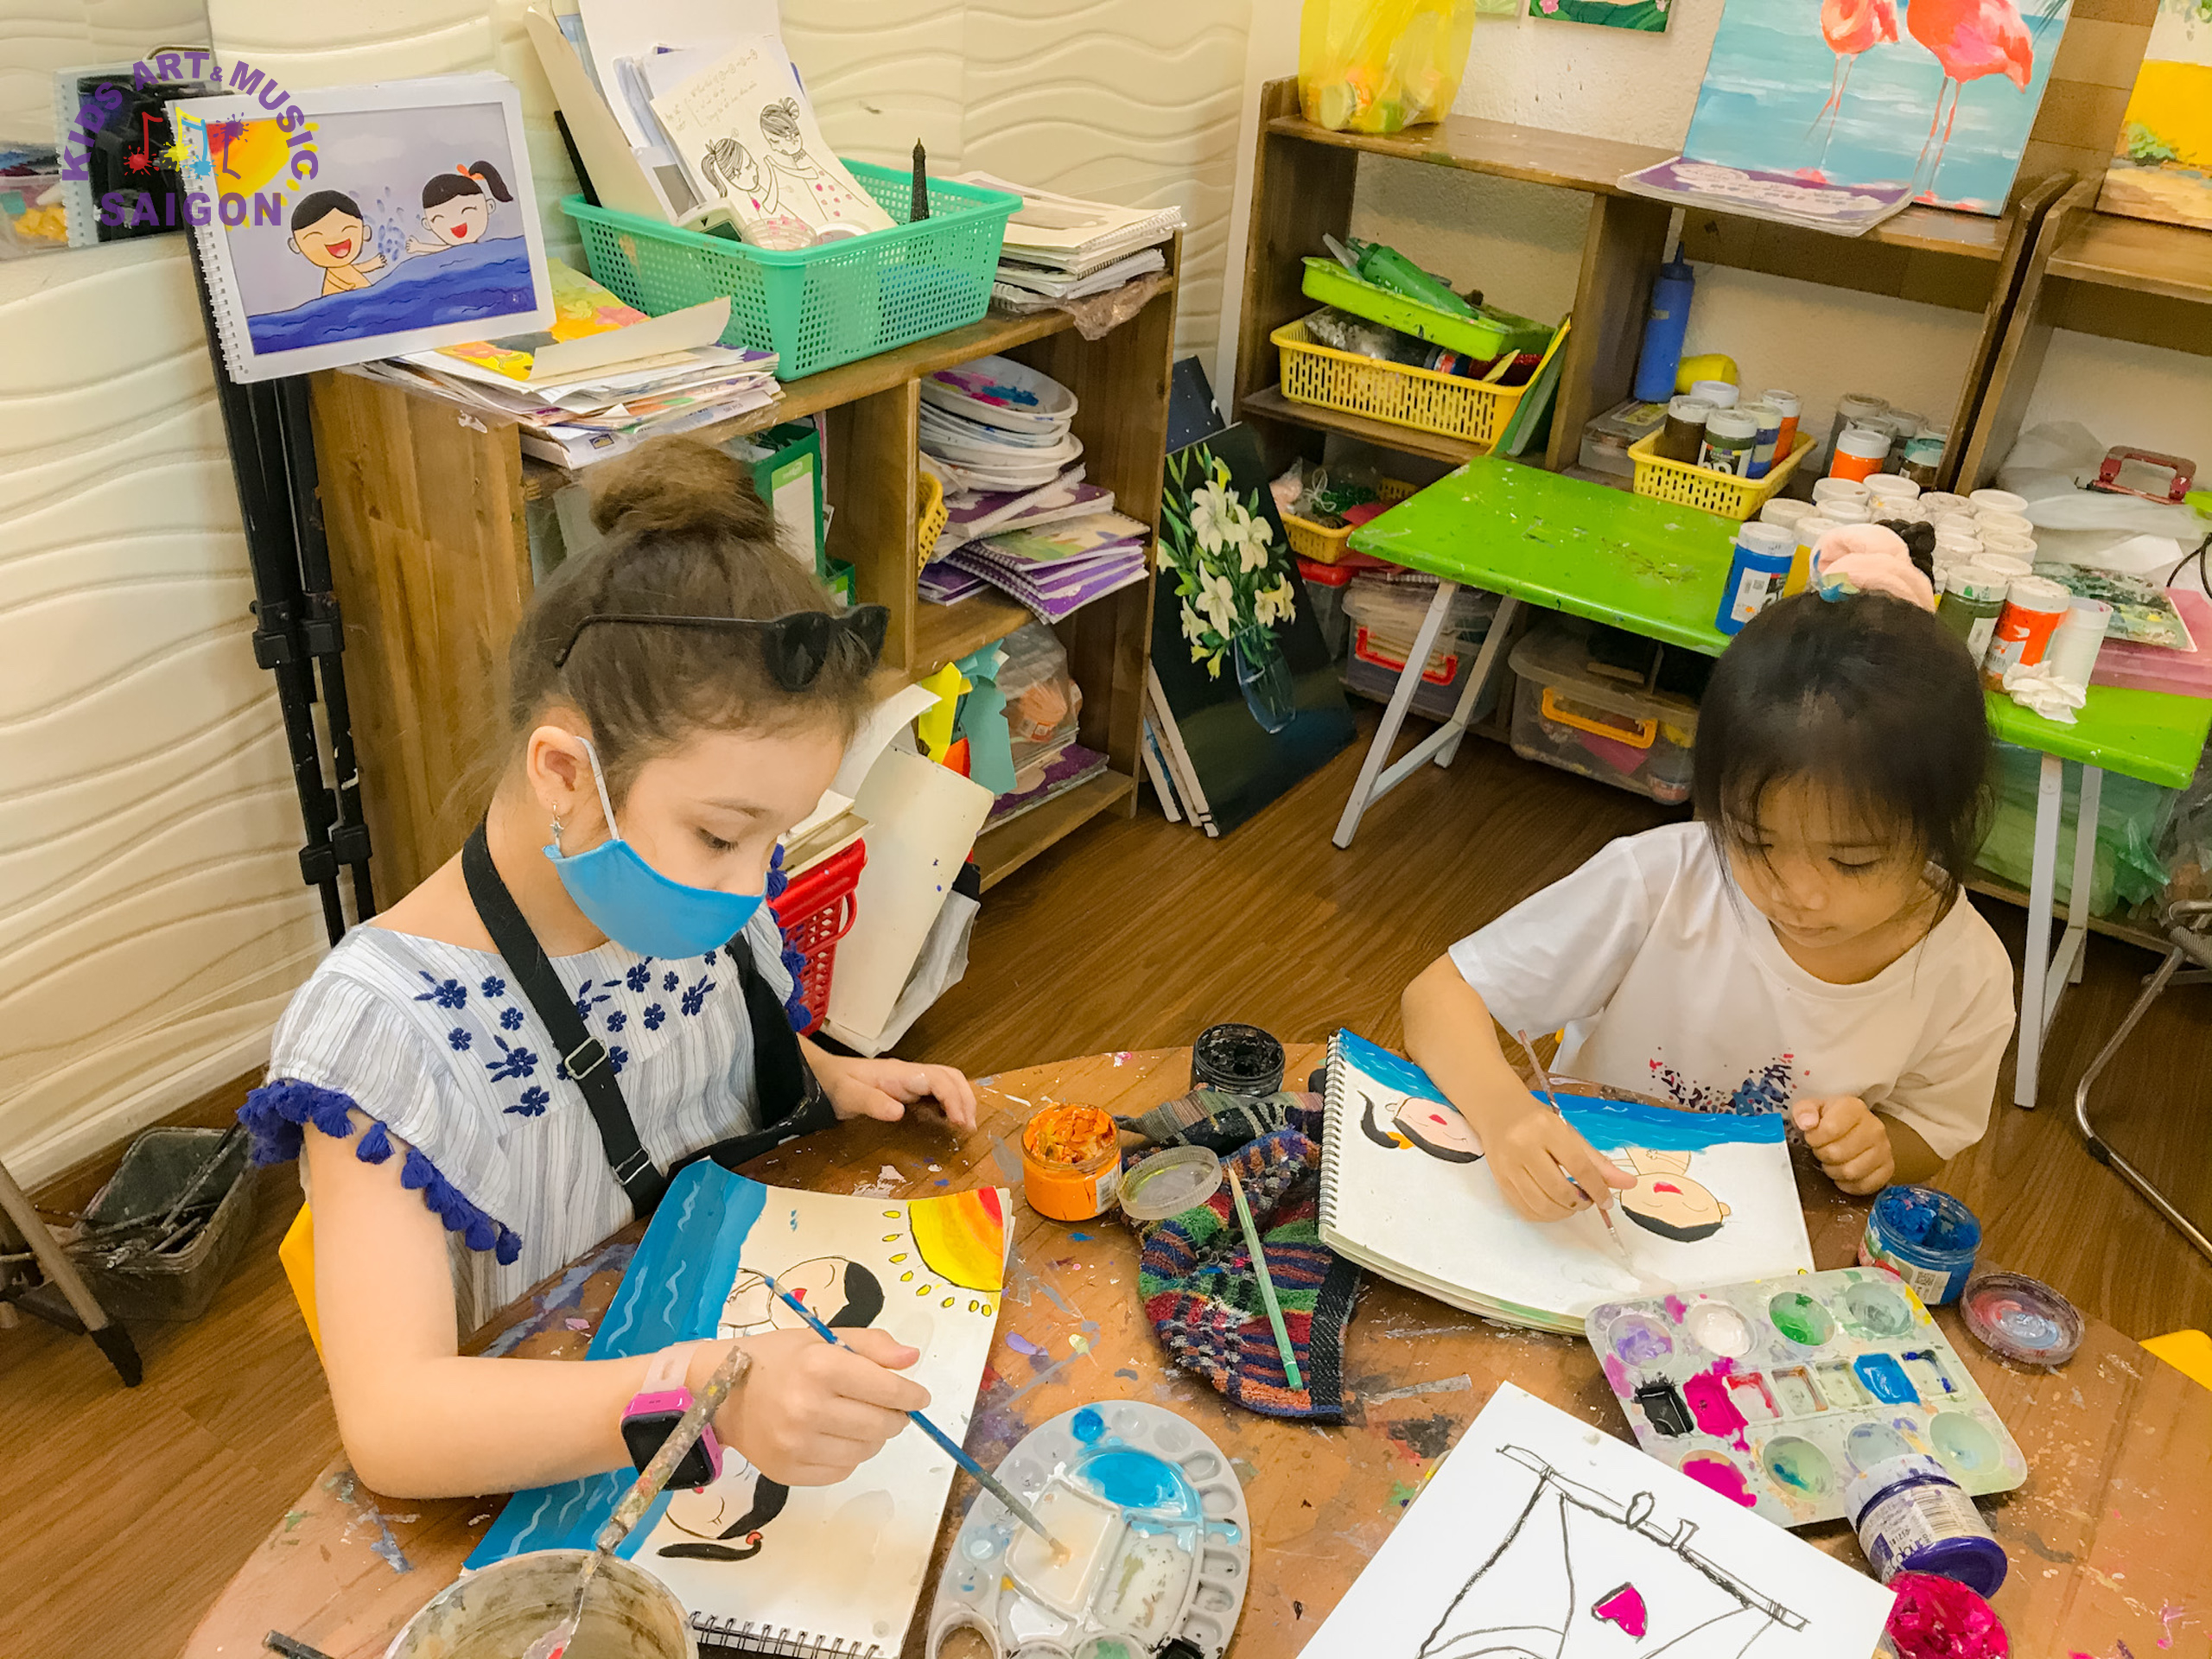 Bạn muốn con yêu sáng tạo và thích màu sắc? Hãy đăng ký ngay cho bé tham gia lớp vẽ của chúng tôi tại Tân Phú. Với đội ngũ giáo viên giàu kinh nghiệm và chuyên môn, lớp vẽ cho bé của chúng tôi chắc chắn sẽ giúp con yêu của bạn tự tin phát huy khả năng vẽ và sáng tạo của mình.